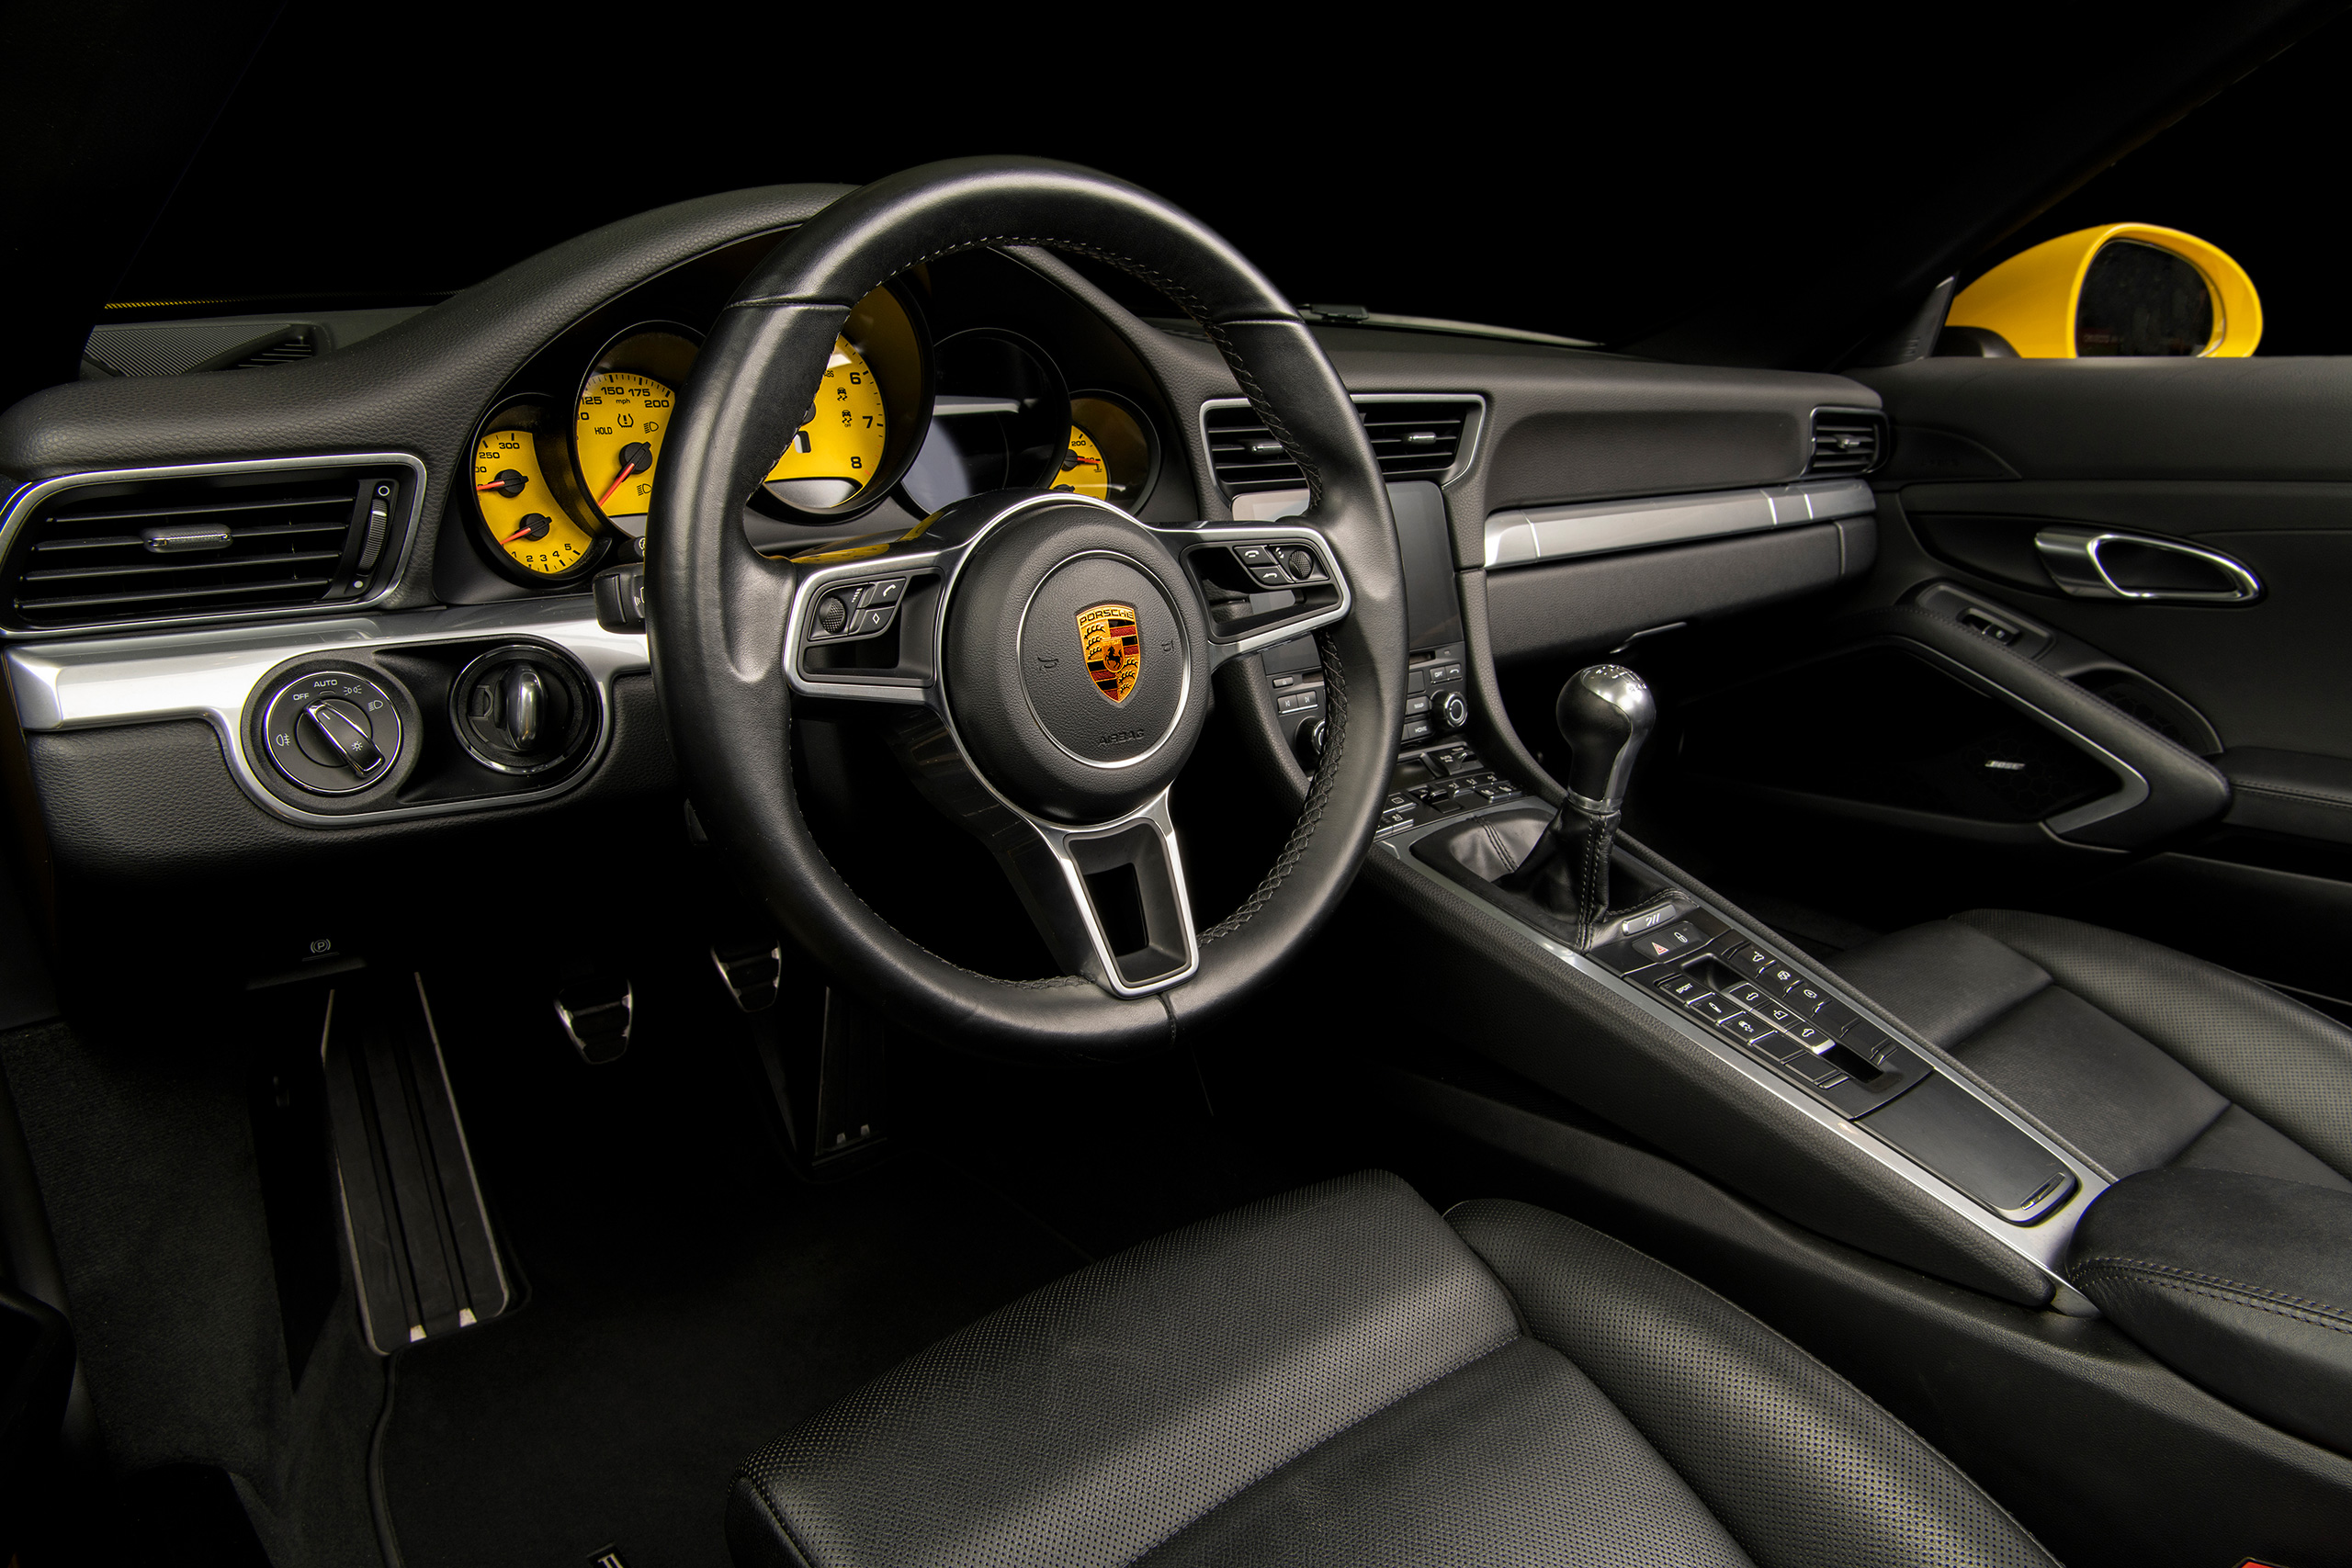 Top more than 150 2014 porsche 911 interior